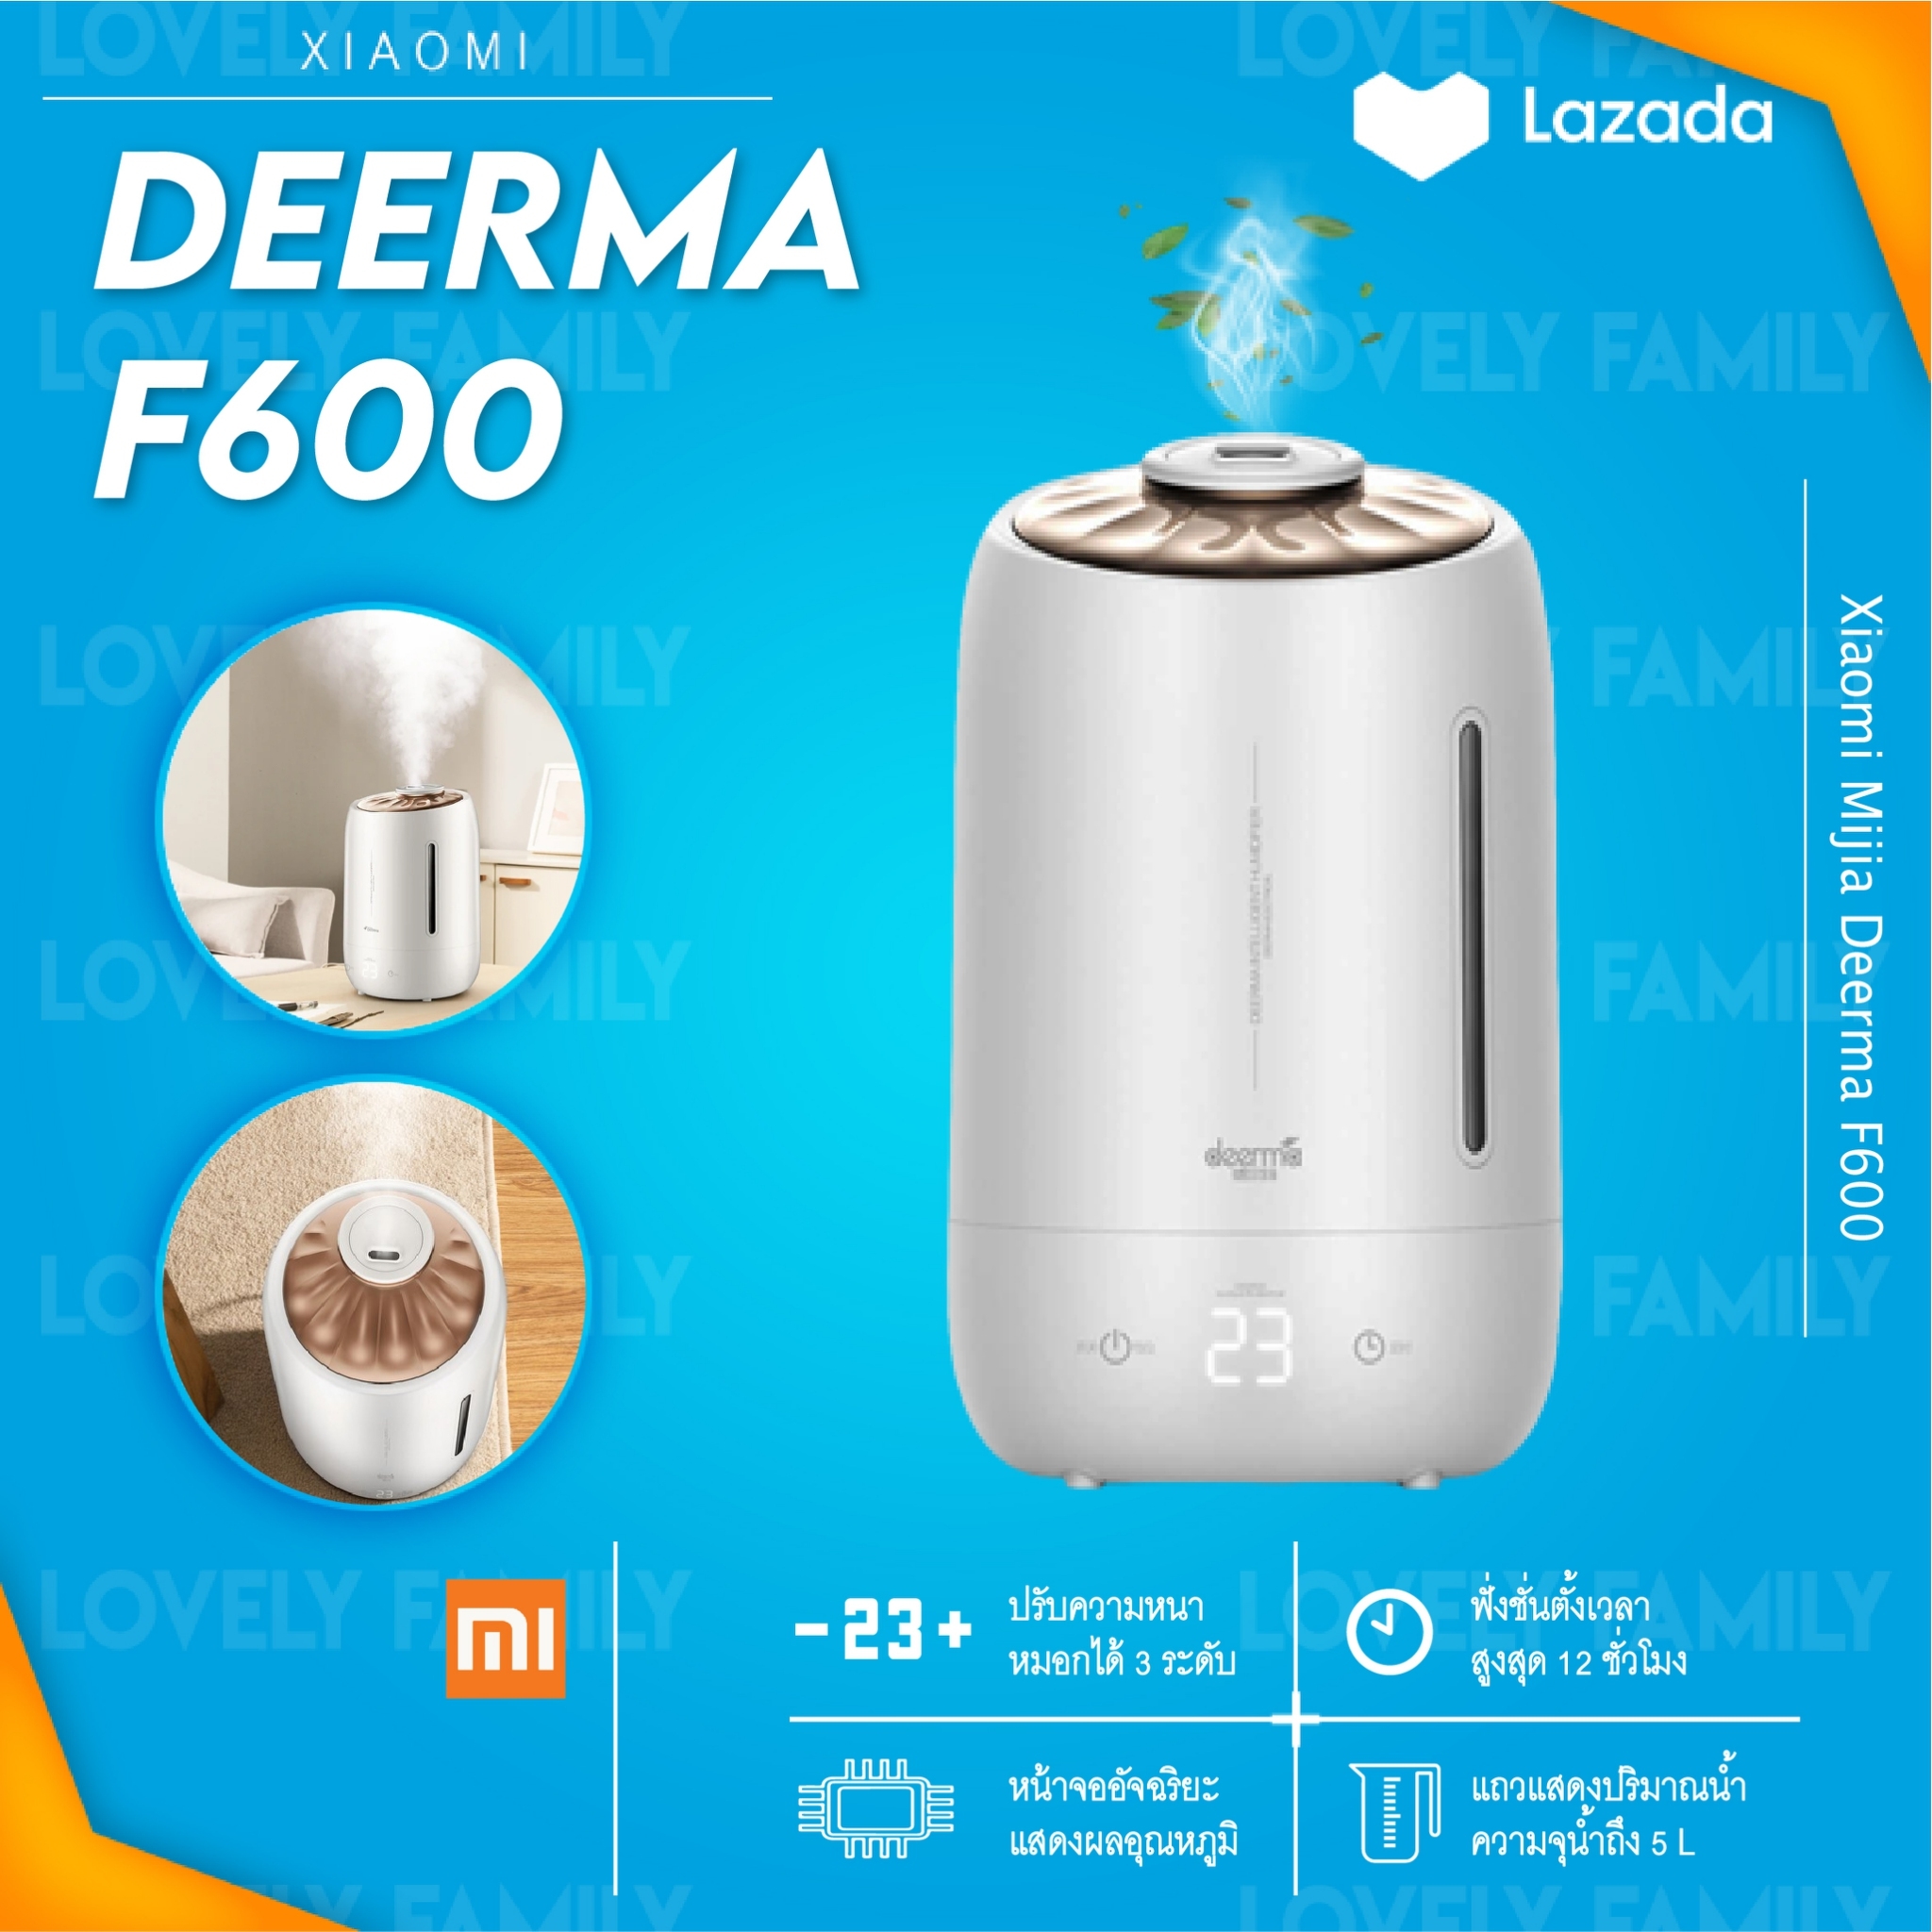 [ประกันศูนย์] Deerma F600 F600s air humidifier 5L เครื่องเพิ่มความชื้น เครื่องทำความชื้น เครื่องฟอกอากาศ เครื่องพ่นอโรม่า